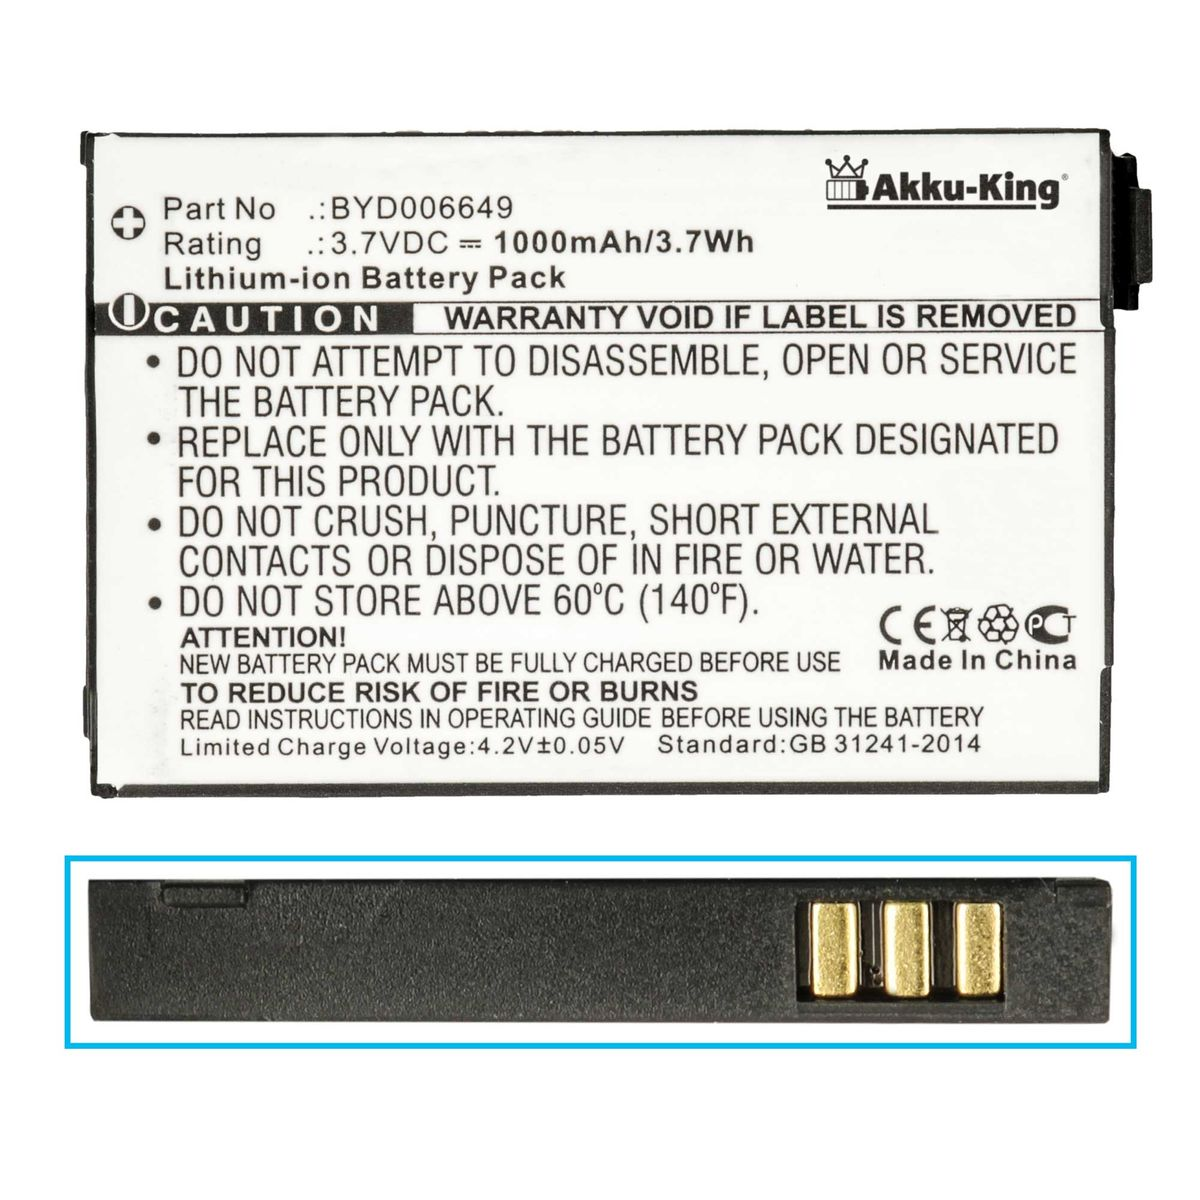 kompatibel Volt, mit BYD001743 Philips Geräte-Akku, Li-Ion Akku 1000mAh 3.7 AKKU-KING